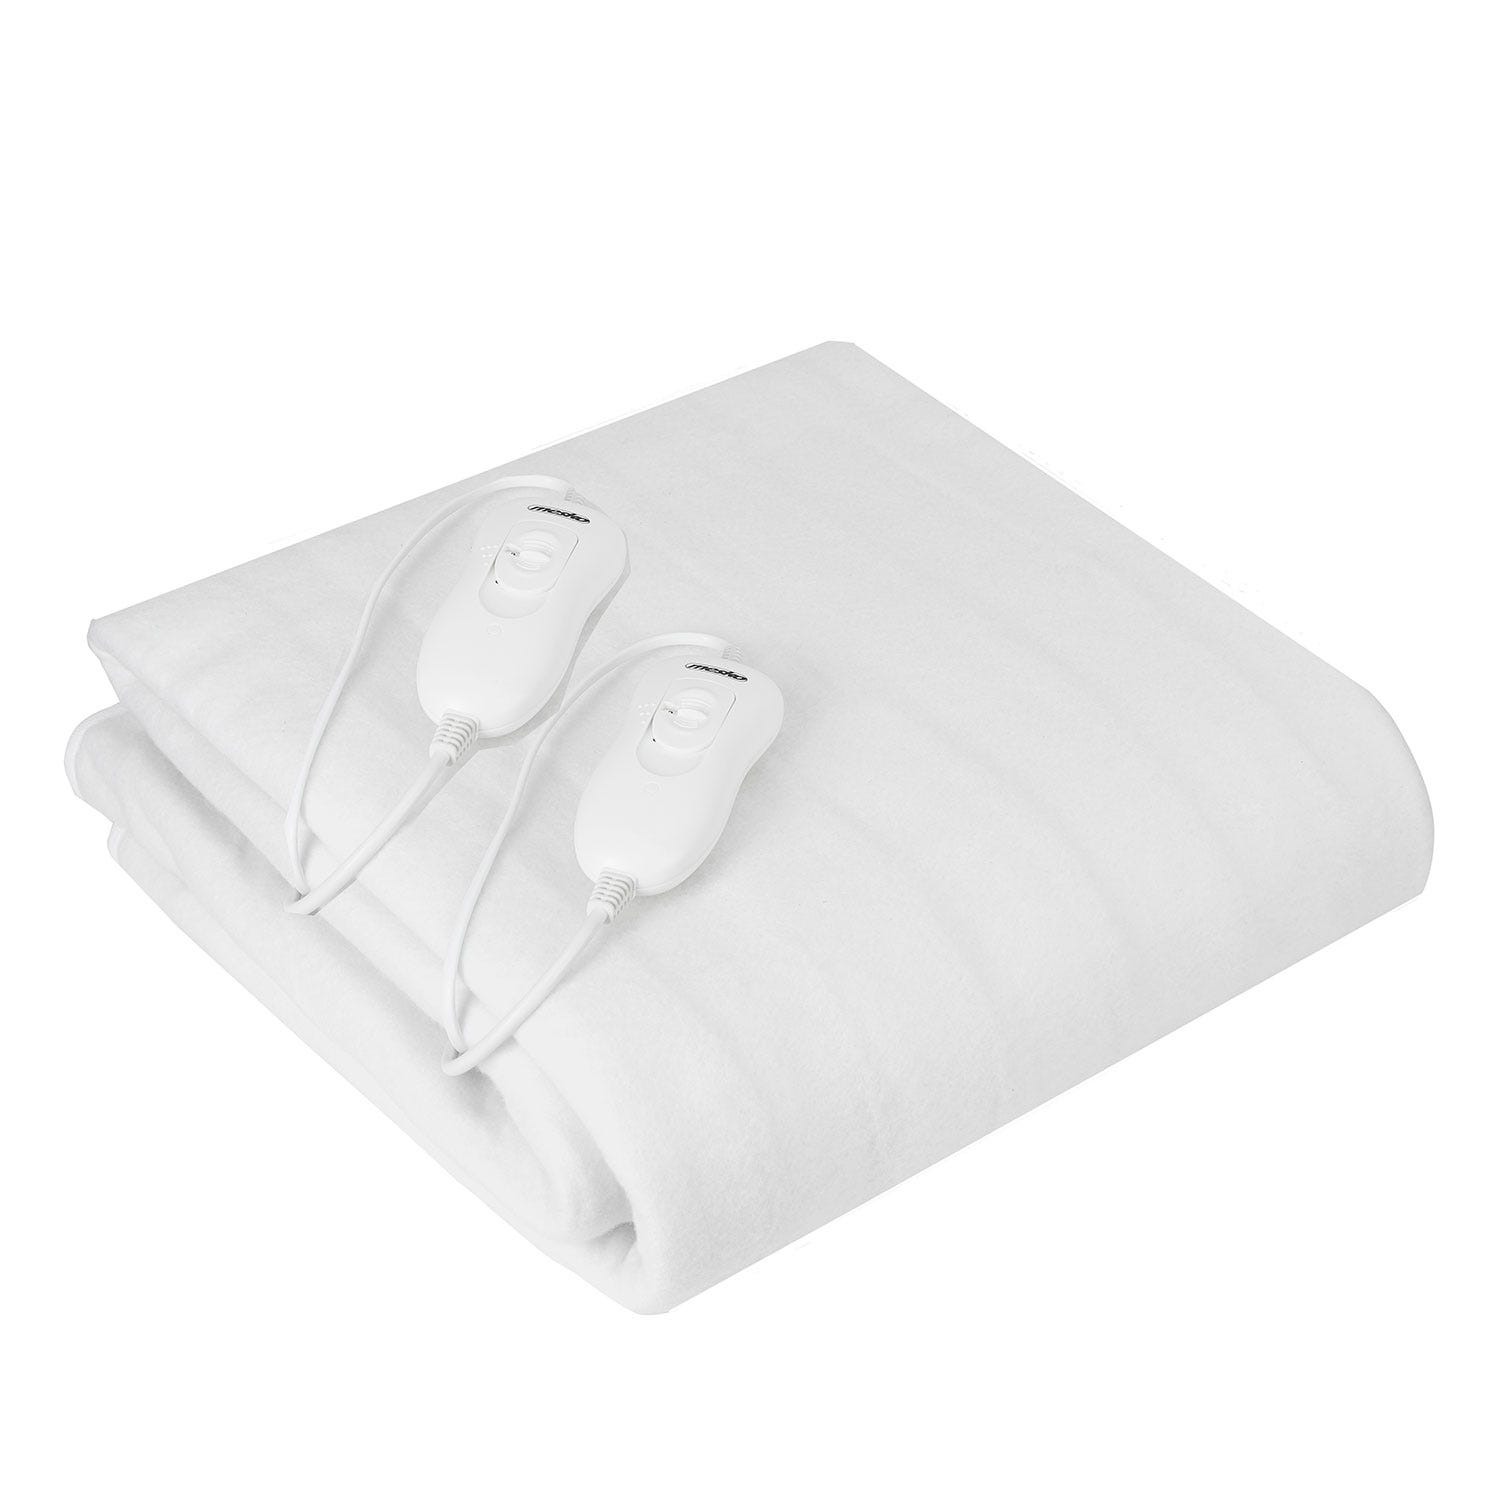 Calienta camas eléctrico individual 150x80 cm - descuento: 42% - 28.95 €